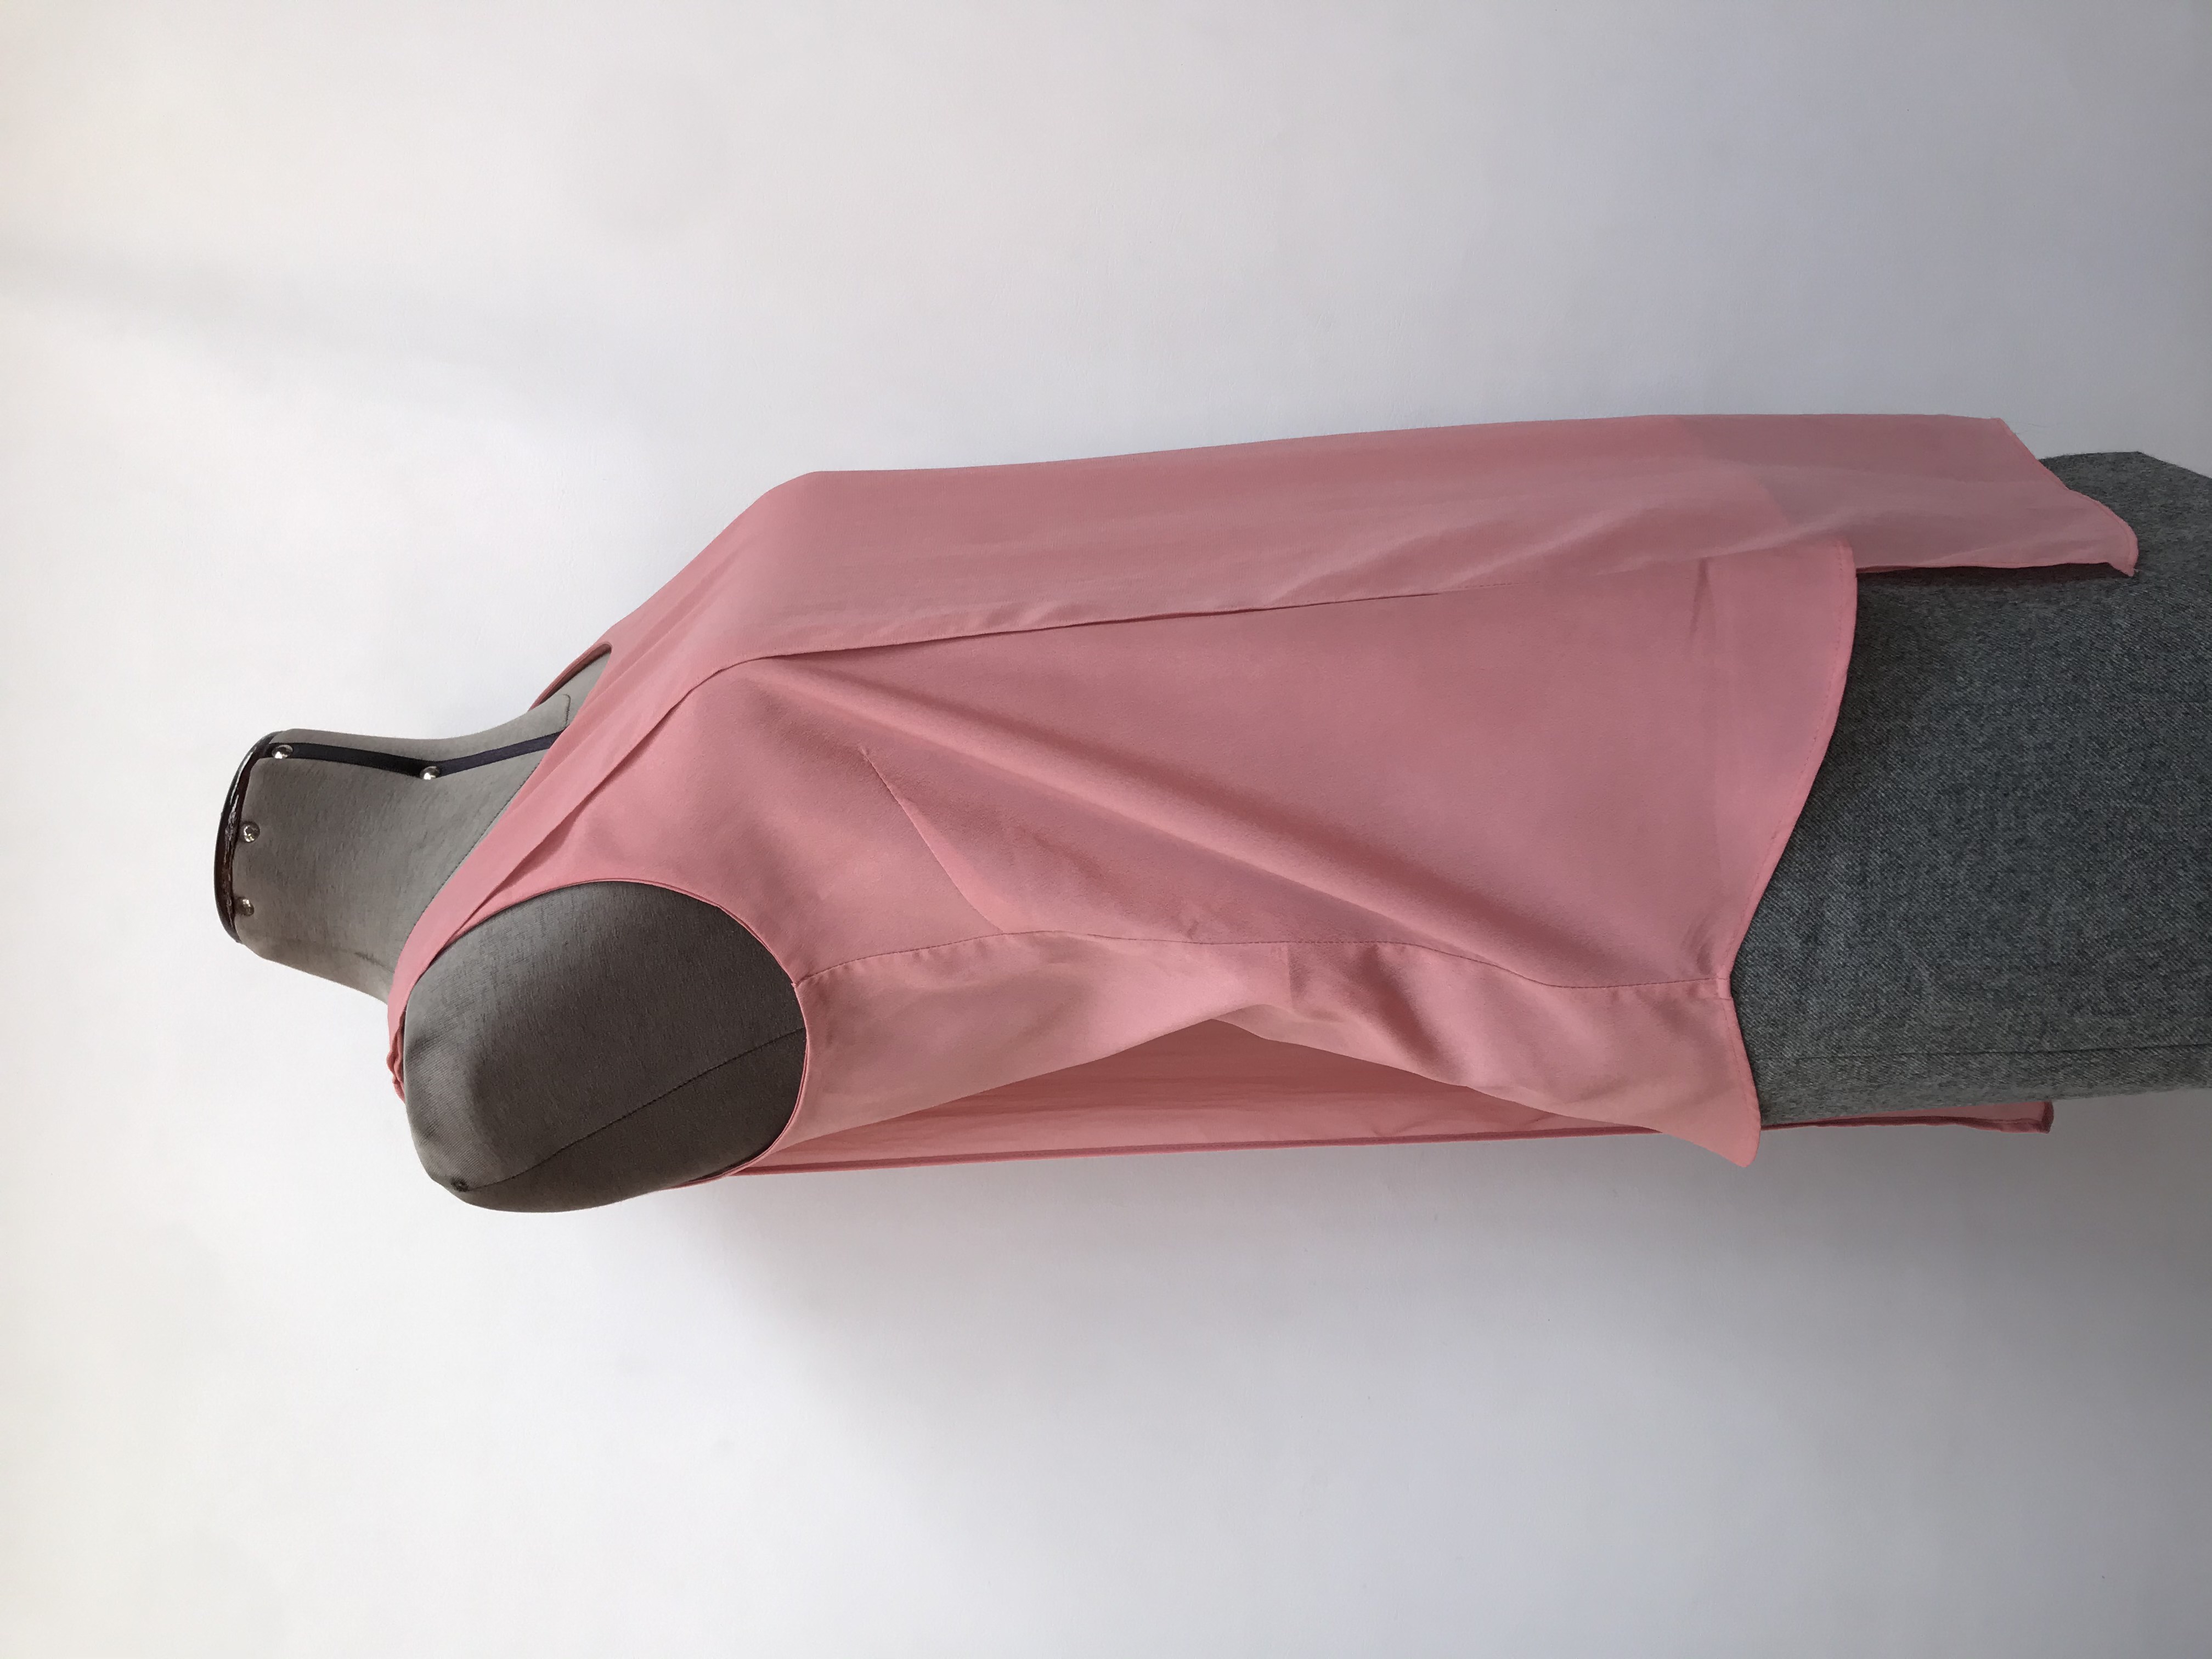 Blusa Mango palo rosa con capa de gasa asimétrica y aberturas laterales. Busto 90cm Largo 60-75cm. Precio original S/ 149